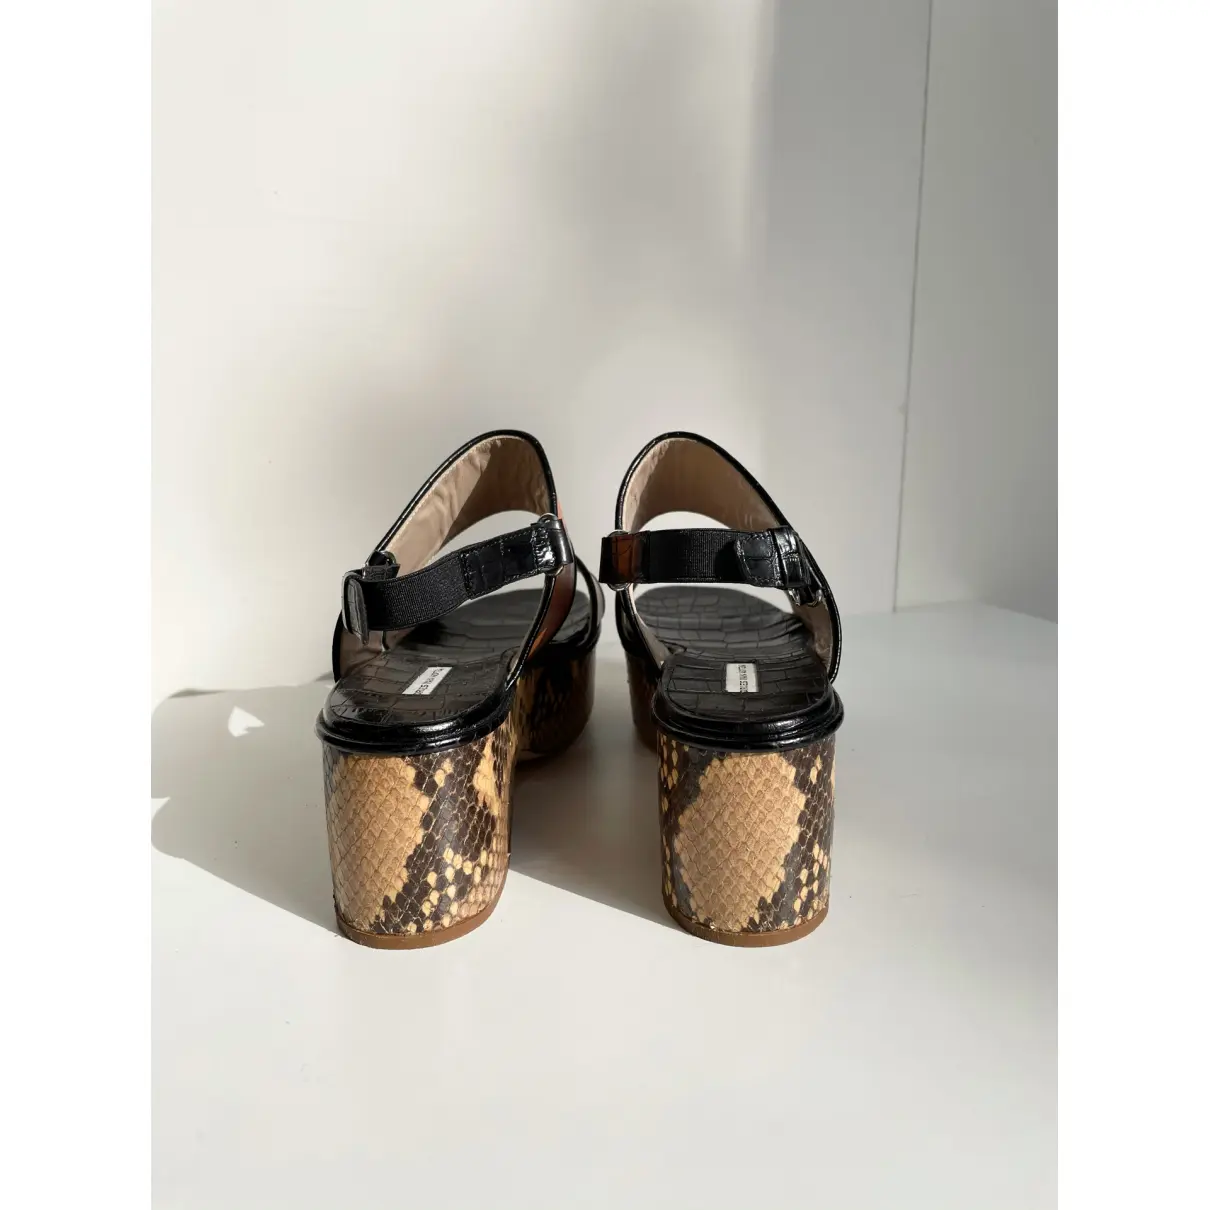 Luxury Dries Van Noten Sandals Women